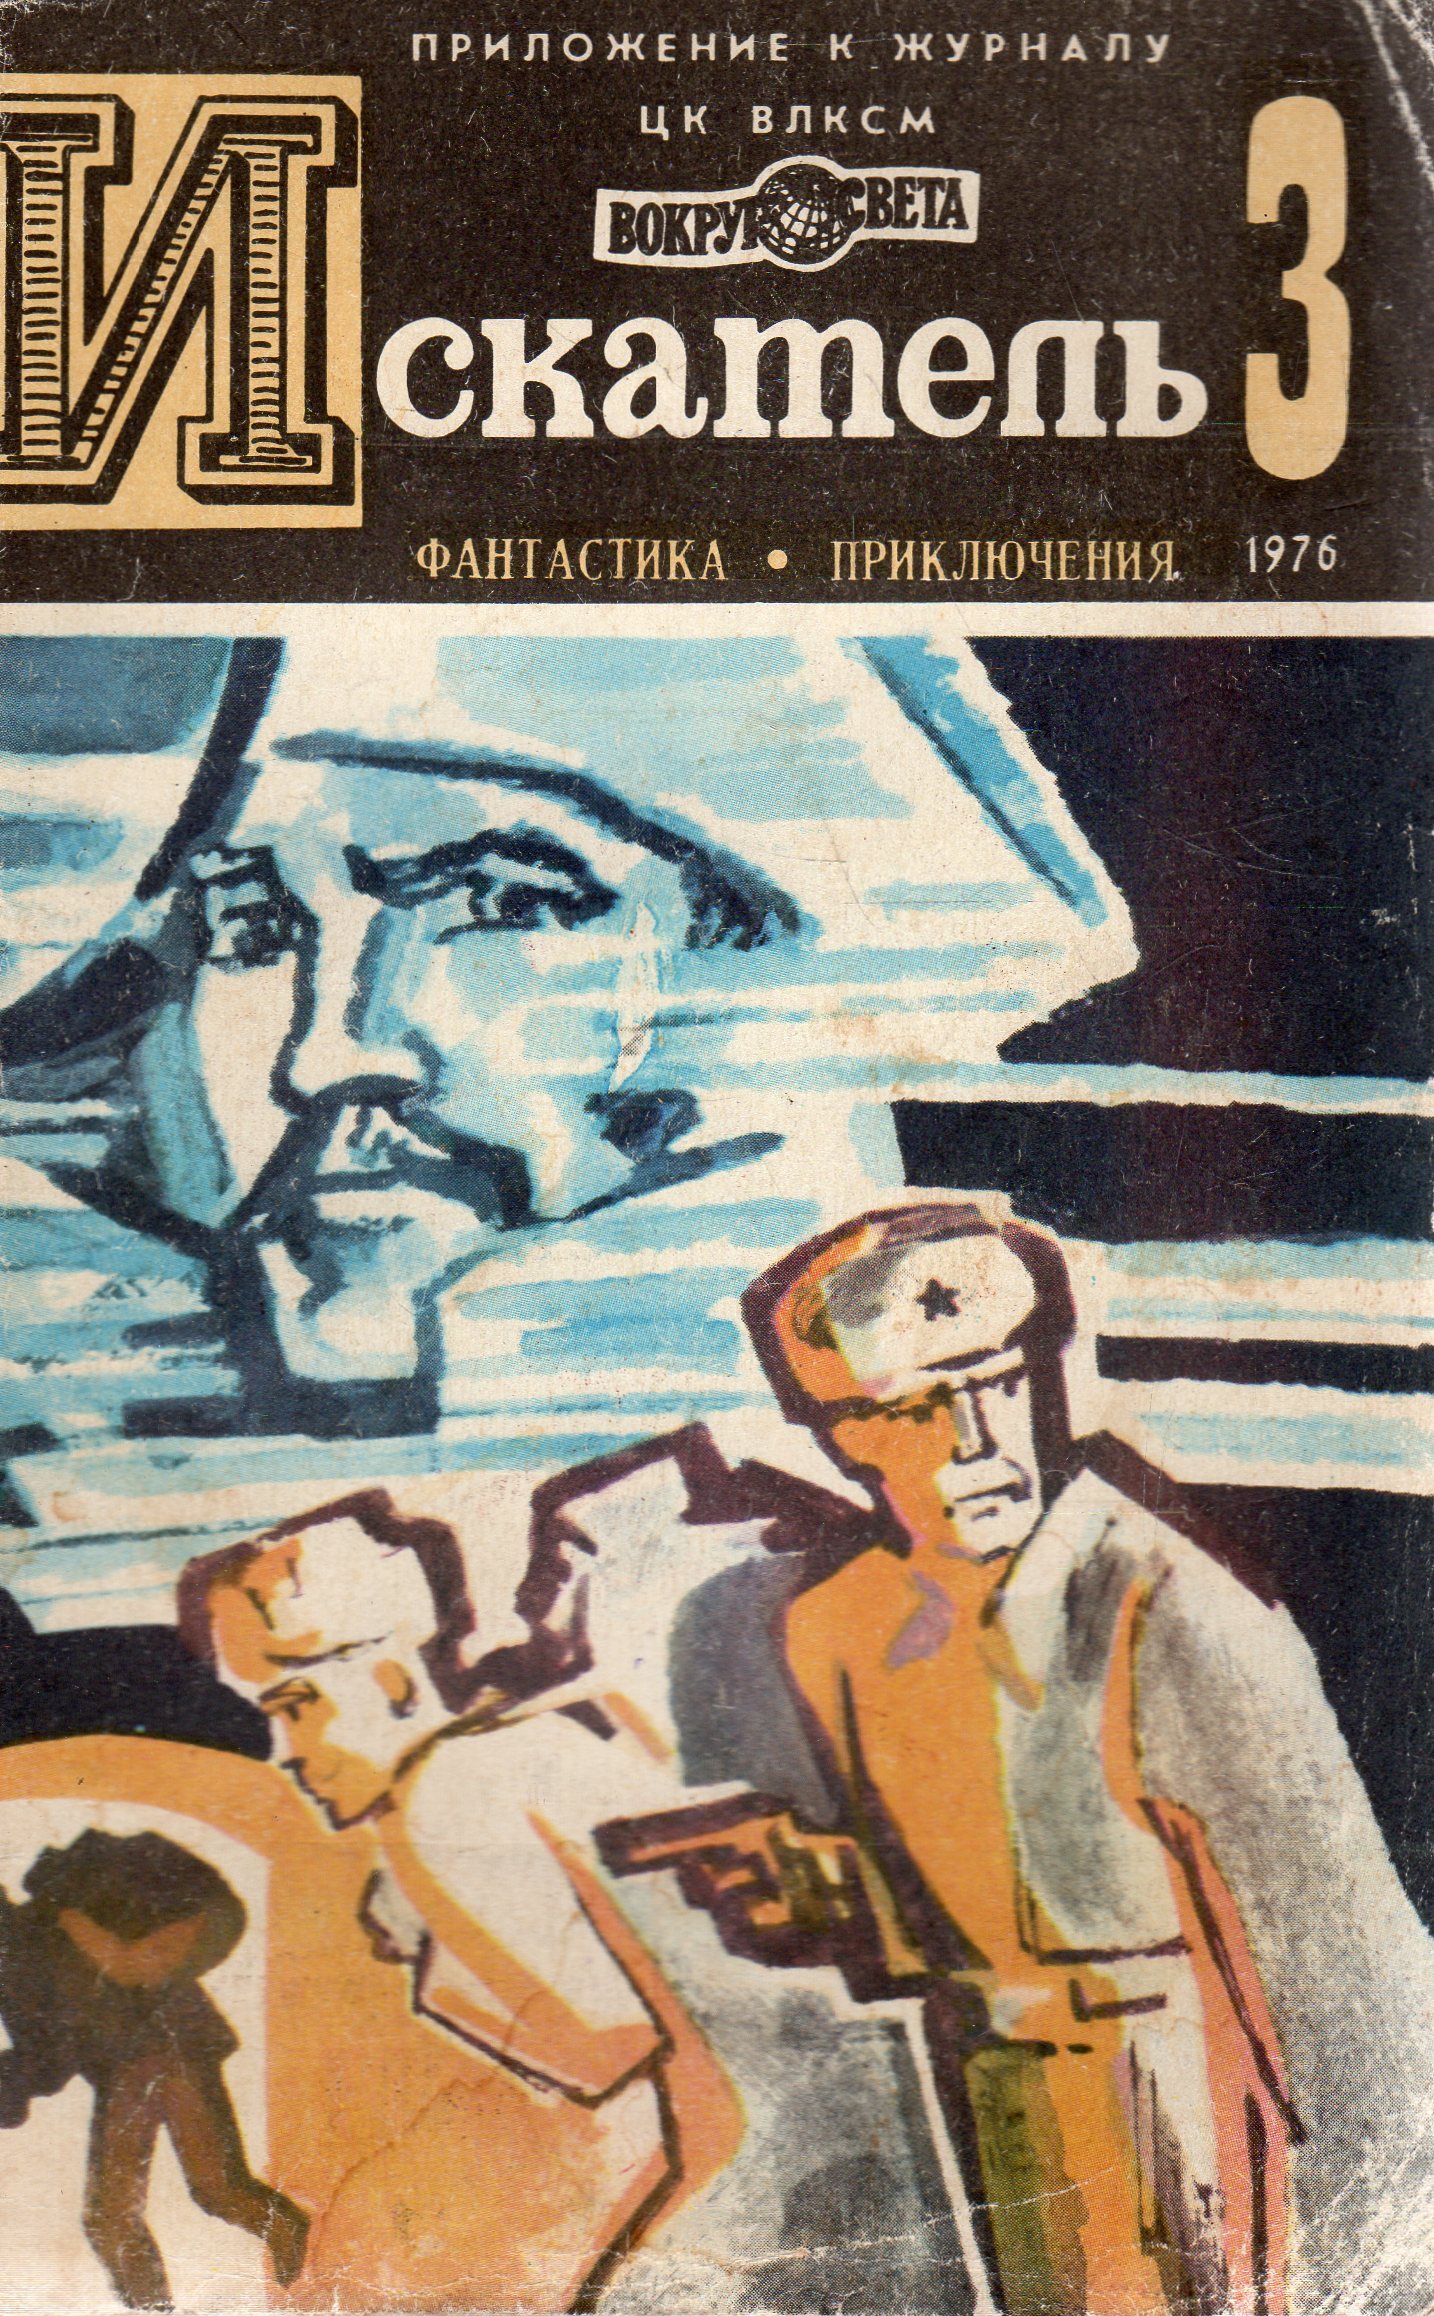 Книги дневники приключения. Приключения 1976 книга. Журнал Искатель Коротеев. Мир приключений 1987.